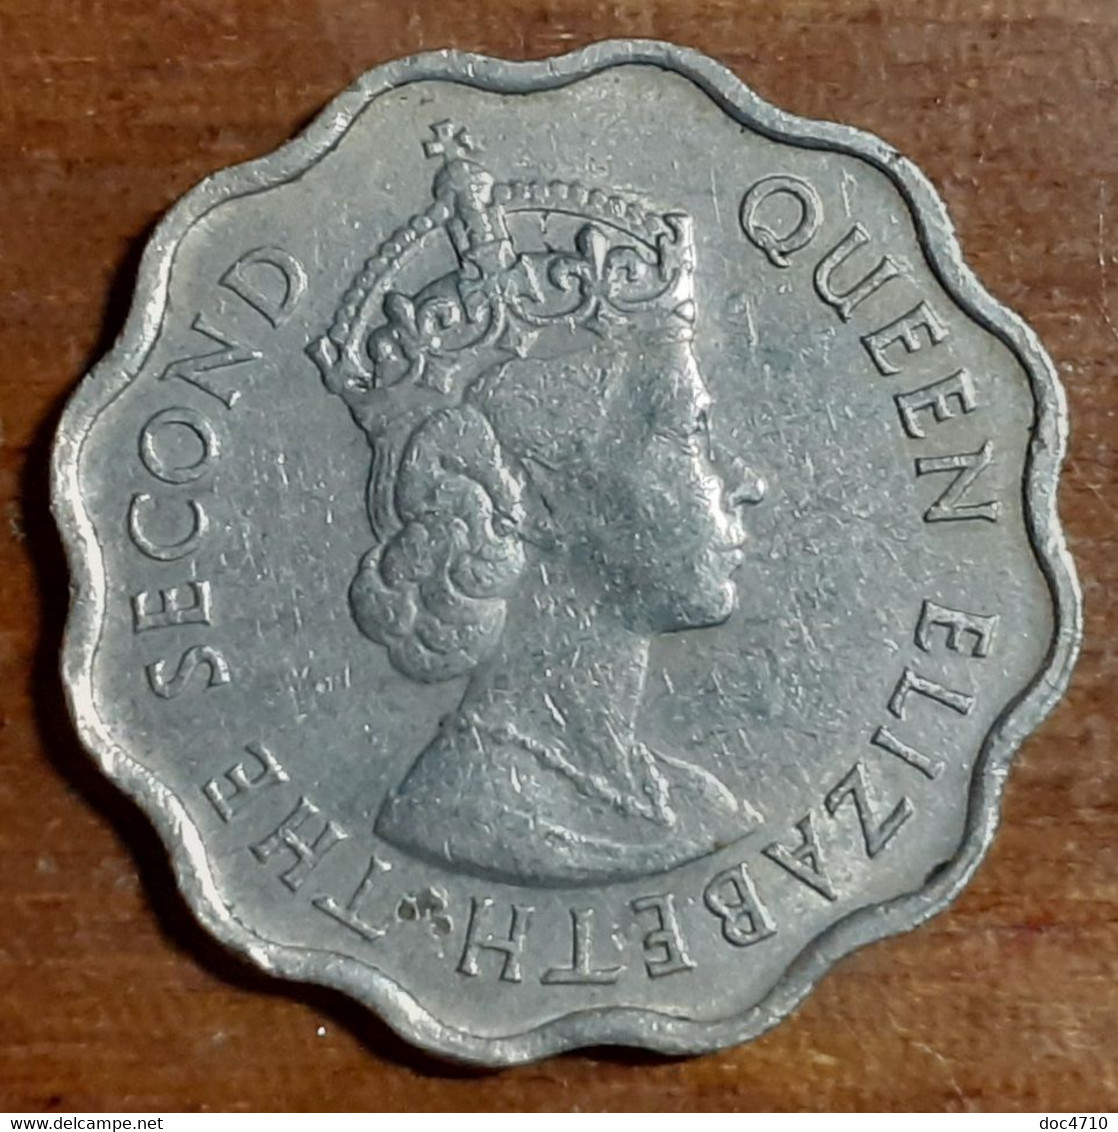 Mauritius 10 Cents 1971, KM#33, VF - Mauritius